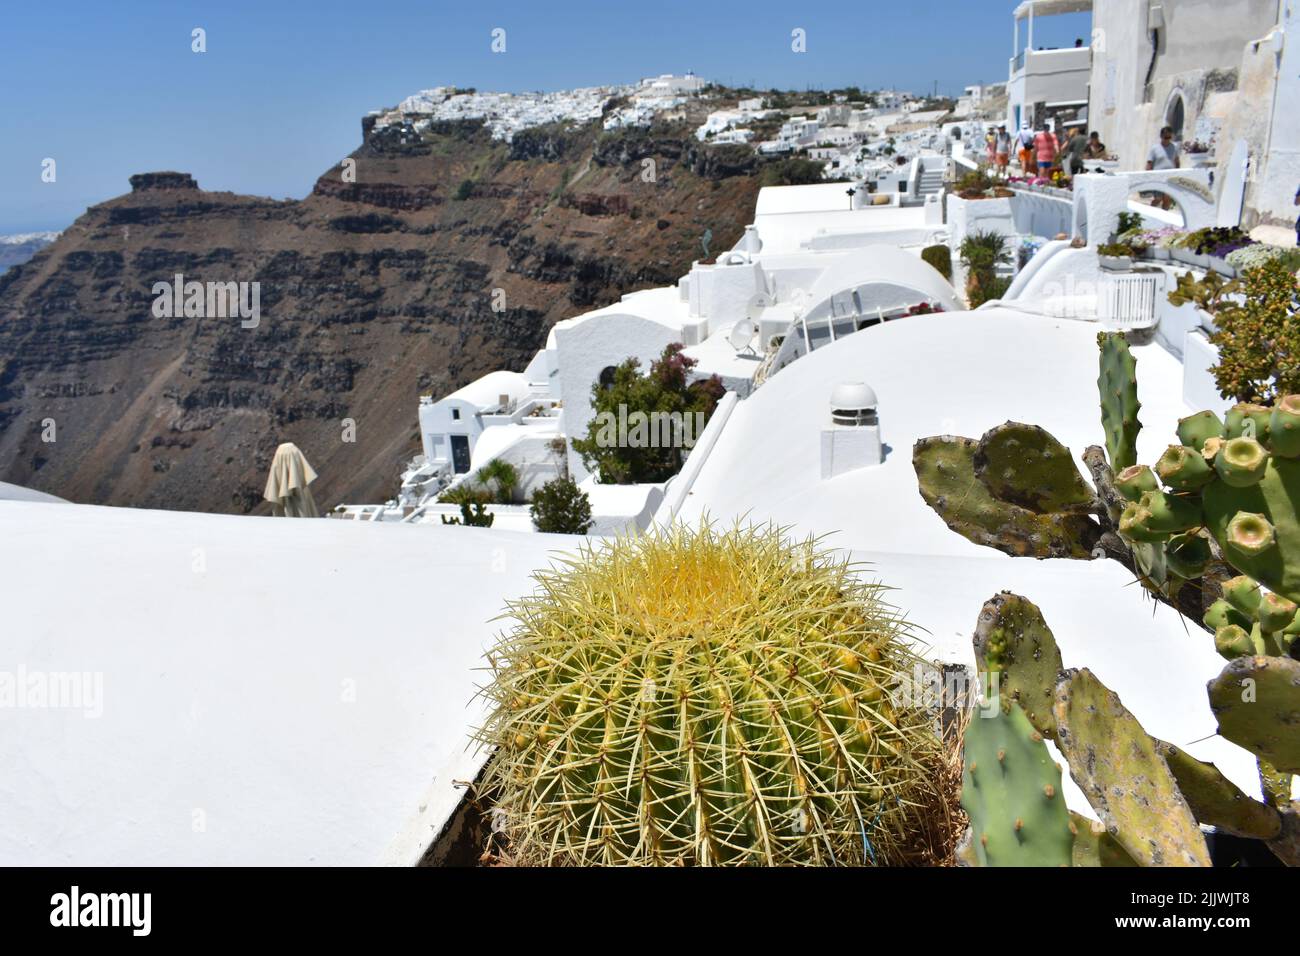 Pianta di cactus in vaso con rocce vulcaniche che si affacciano scogliere e caldera vulcano nel villaggio di Oia, isola di Santorini, mar Egeo, isole greche, Cicladi Foto Stock